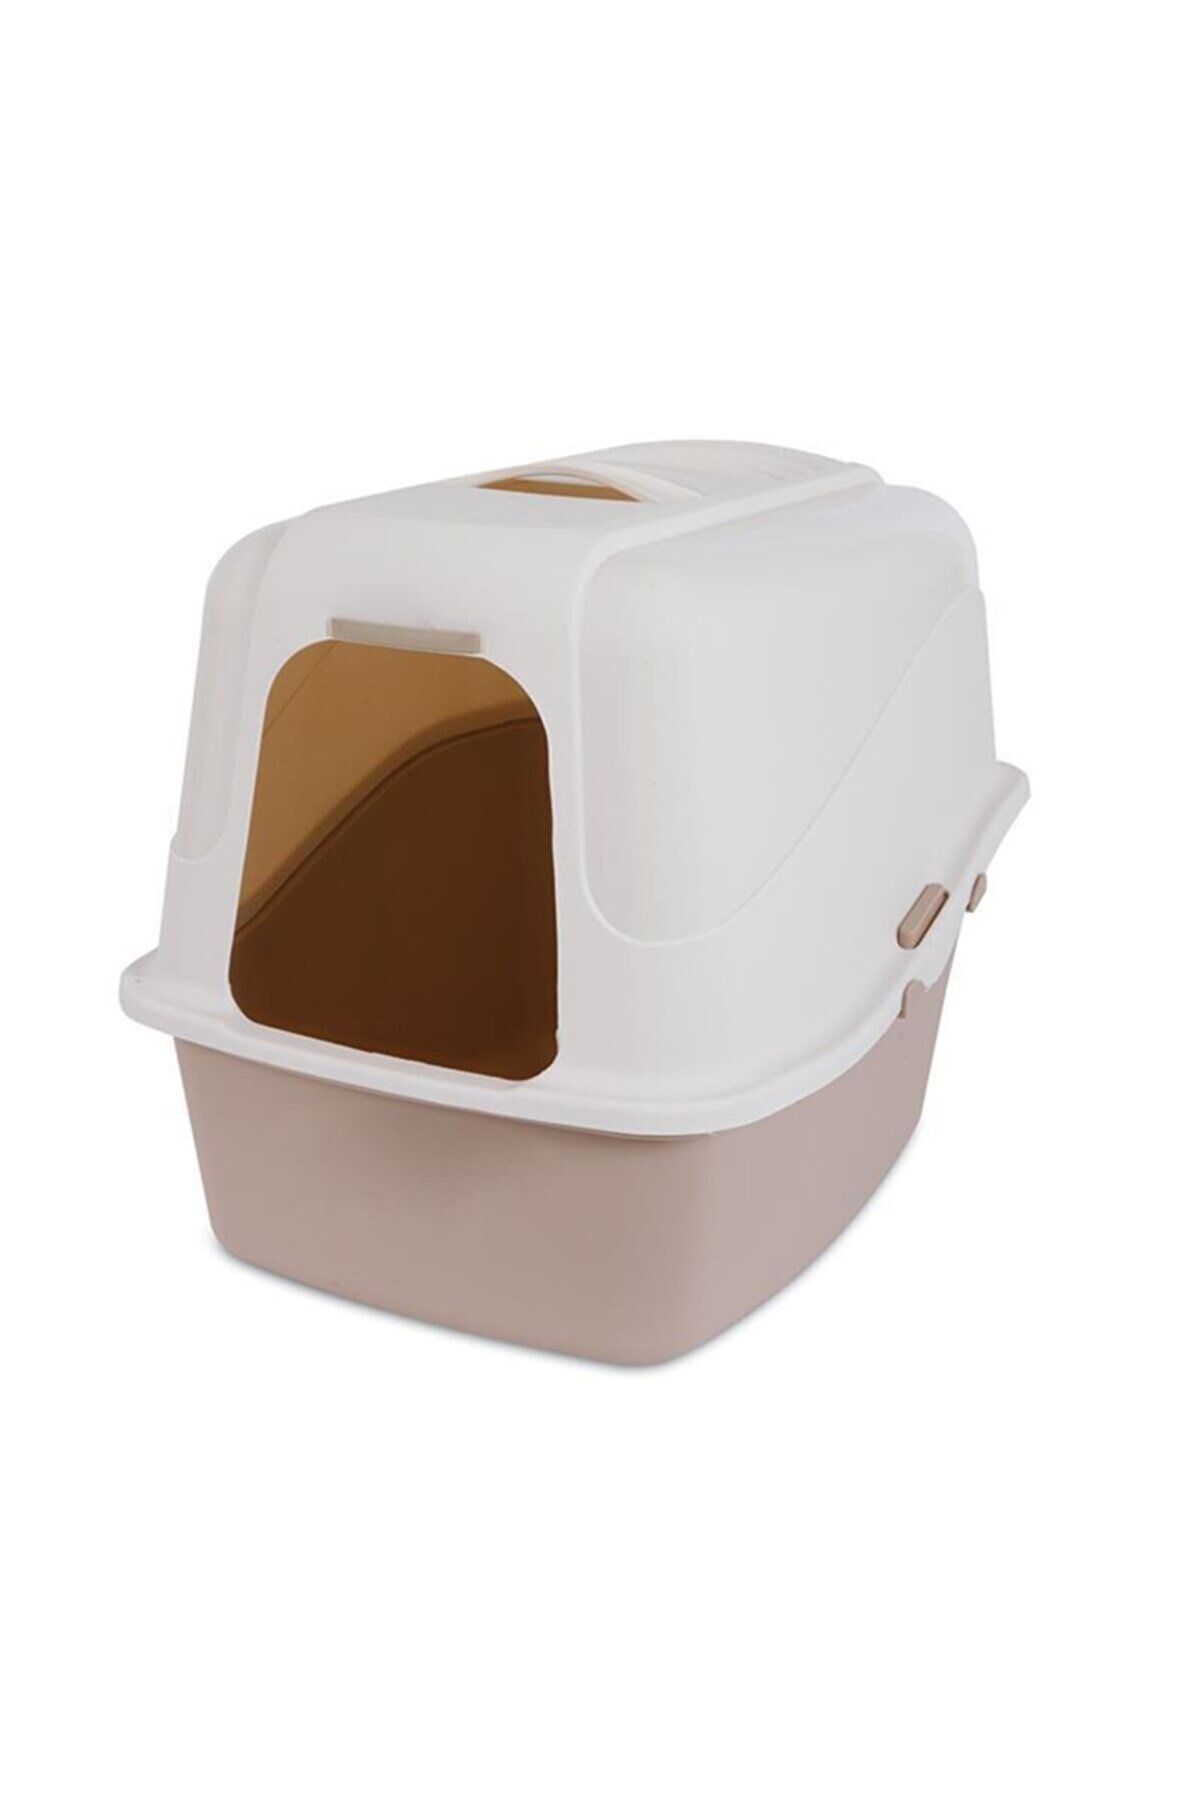 Petmate Hooded Microban Kapalı Kedi Tuvaleti Kahverengi